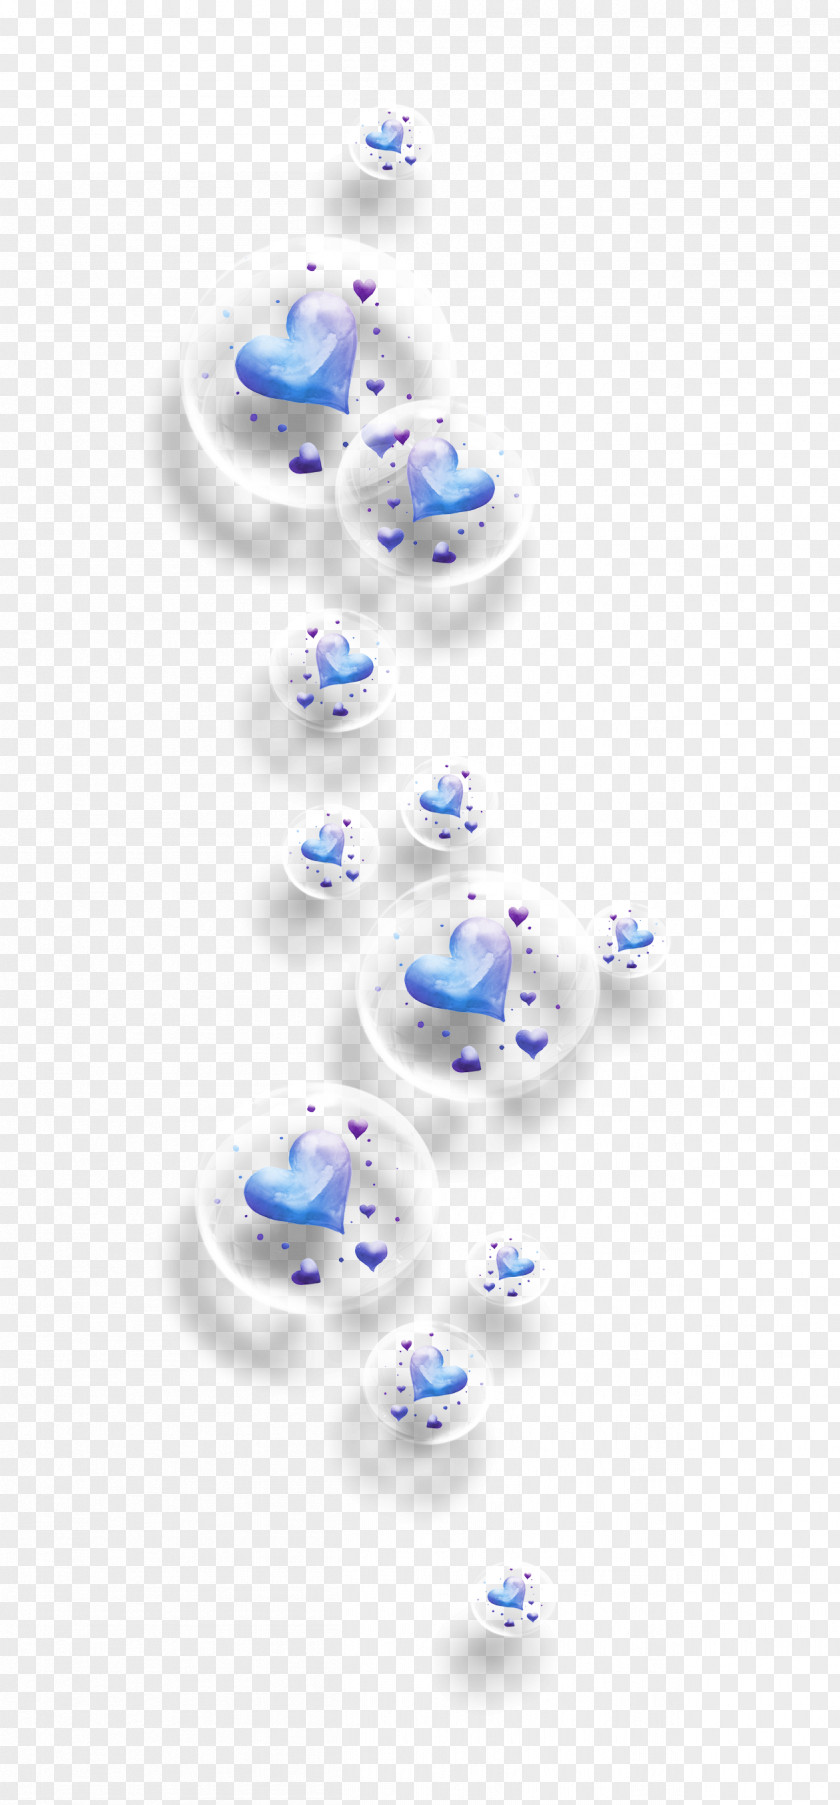 U0423u043au0440u0430u0448u0435u043du0438u0435 Ornament PNG , Dream bubble, blue bubbles clipart PNG